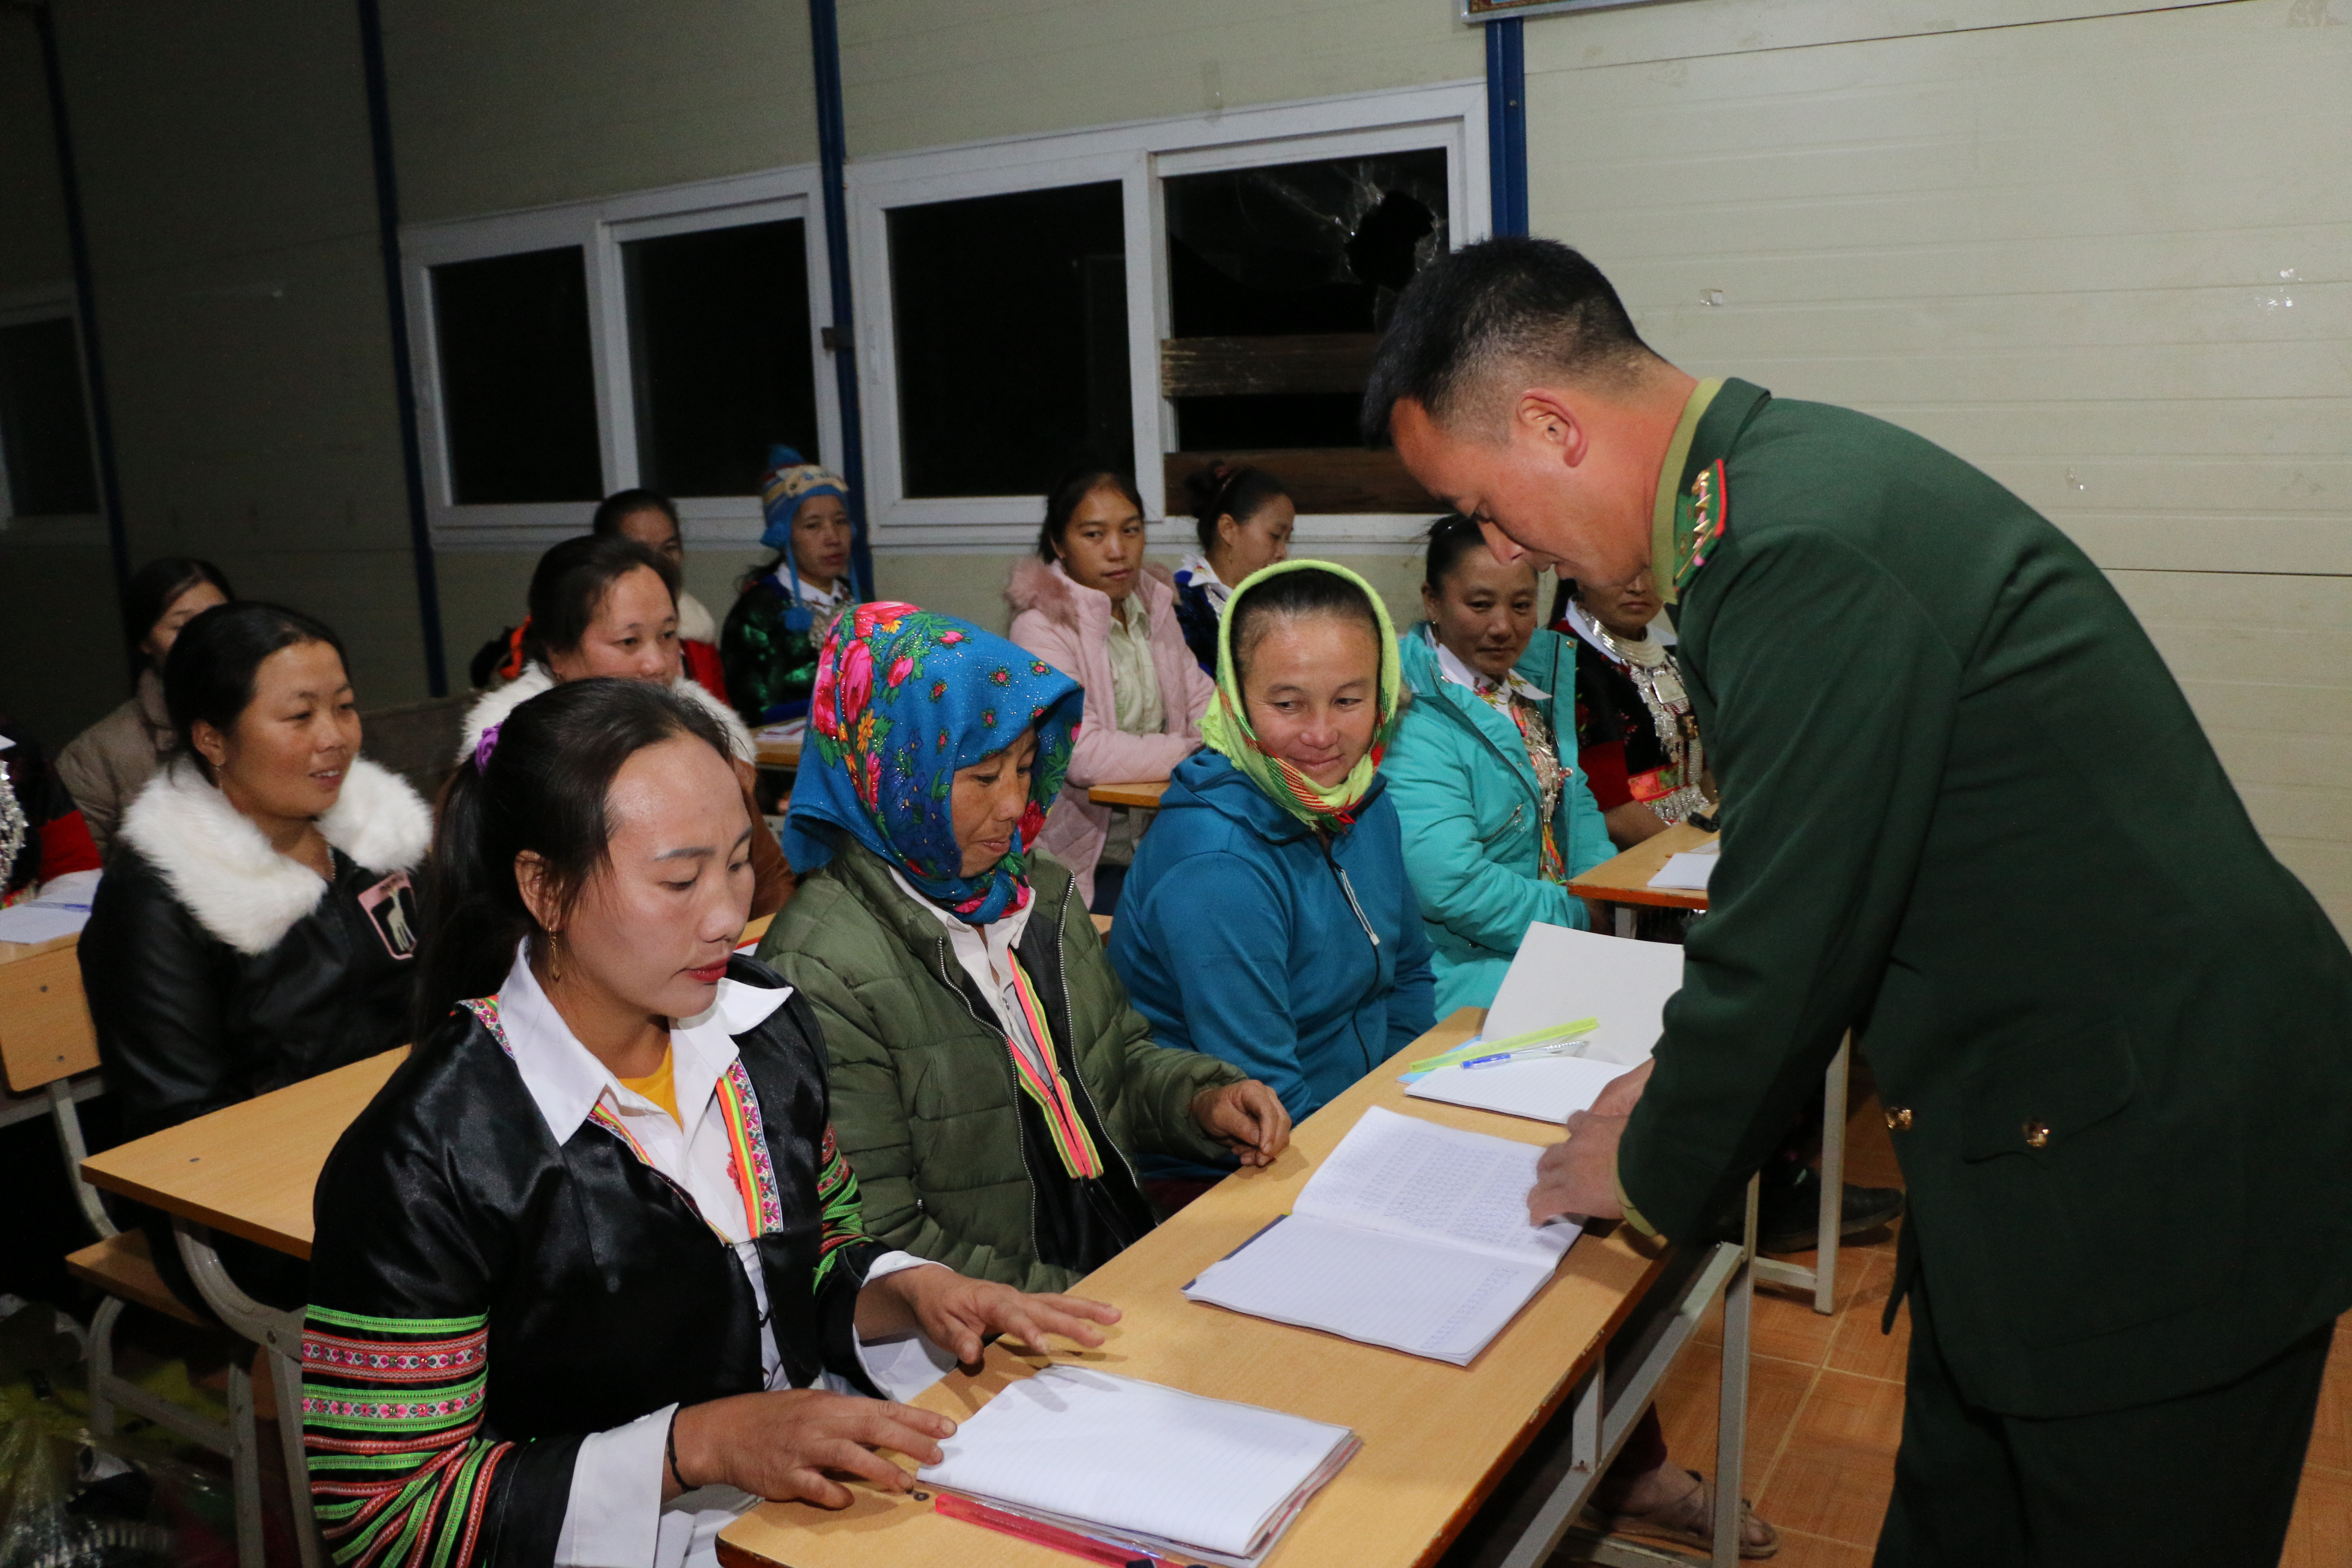 Trung úy Lỳ Bá Chù cũng là người dân tộc Mông, được giao phụ trách giảng dạy một lớp gồm 27 học viên cho biết:Lớp học nhằm giúp đỡ đồng bào, nhất là phụ nữ dân tộc Mông tại bản Huổi Mới biết đọc, biết viết, tính toán, góp phần nâng cao kiến thức, thúc đẩy phát triển kinh tế, xóa đói giảm nghèo ở khu vực biên giới. Năm ngoái, Đồn biên phòng Tri Lễ cũng đã tổ chức một lớp học xóa mù cho 26 học viên phụ nữ người Mông ở bản Pả Khốm